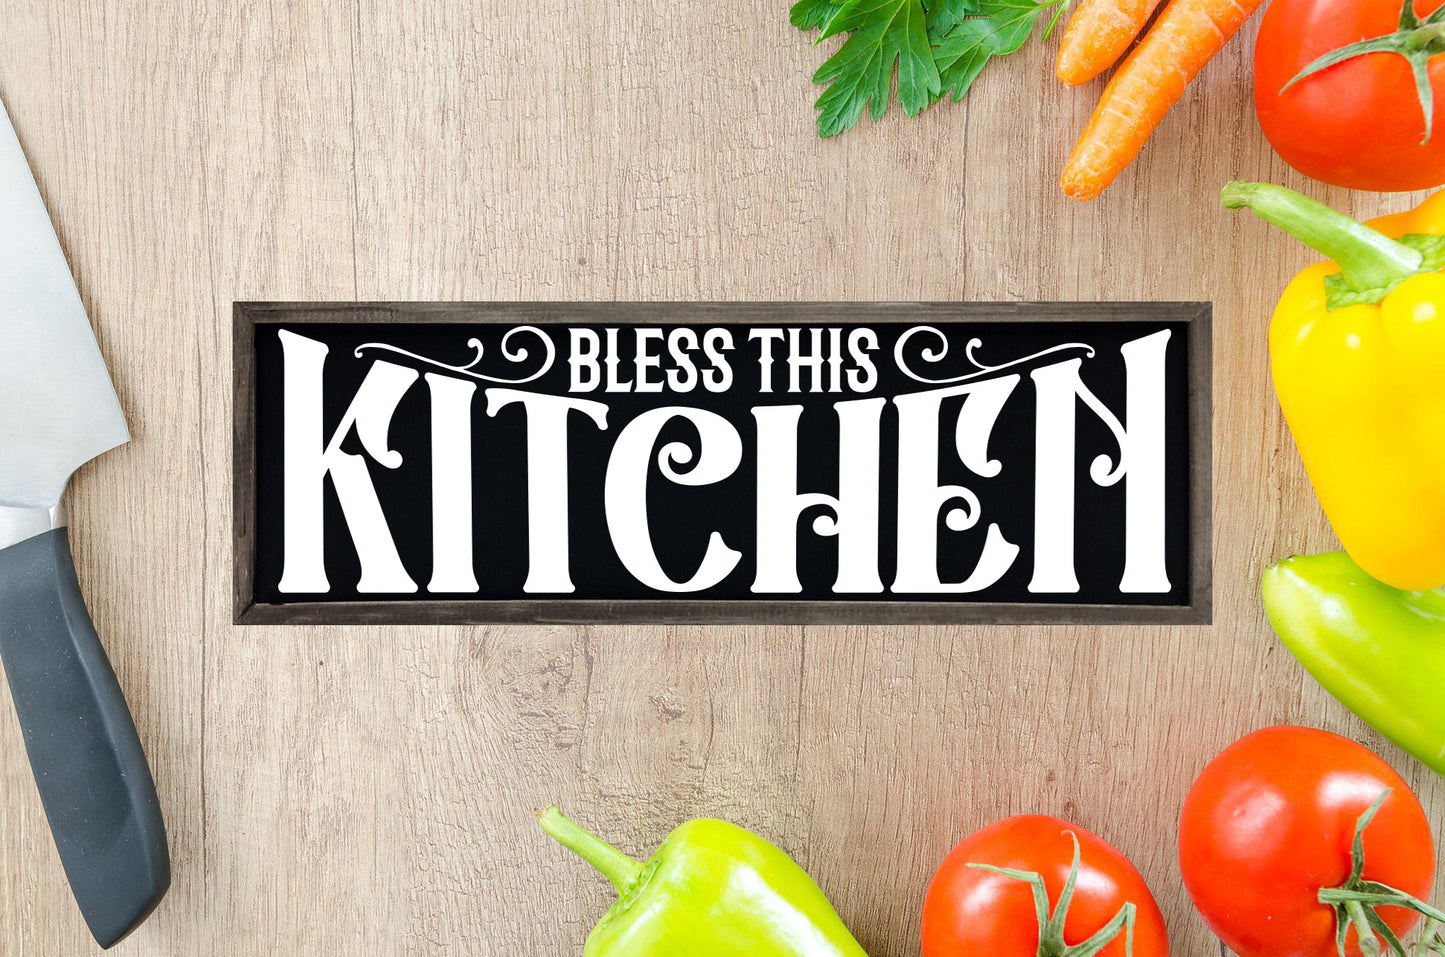 Vintage Kitchen Sign SVG Bundle